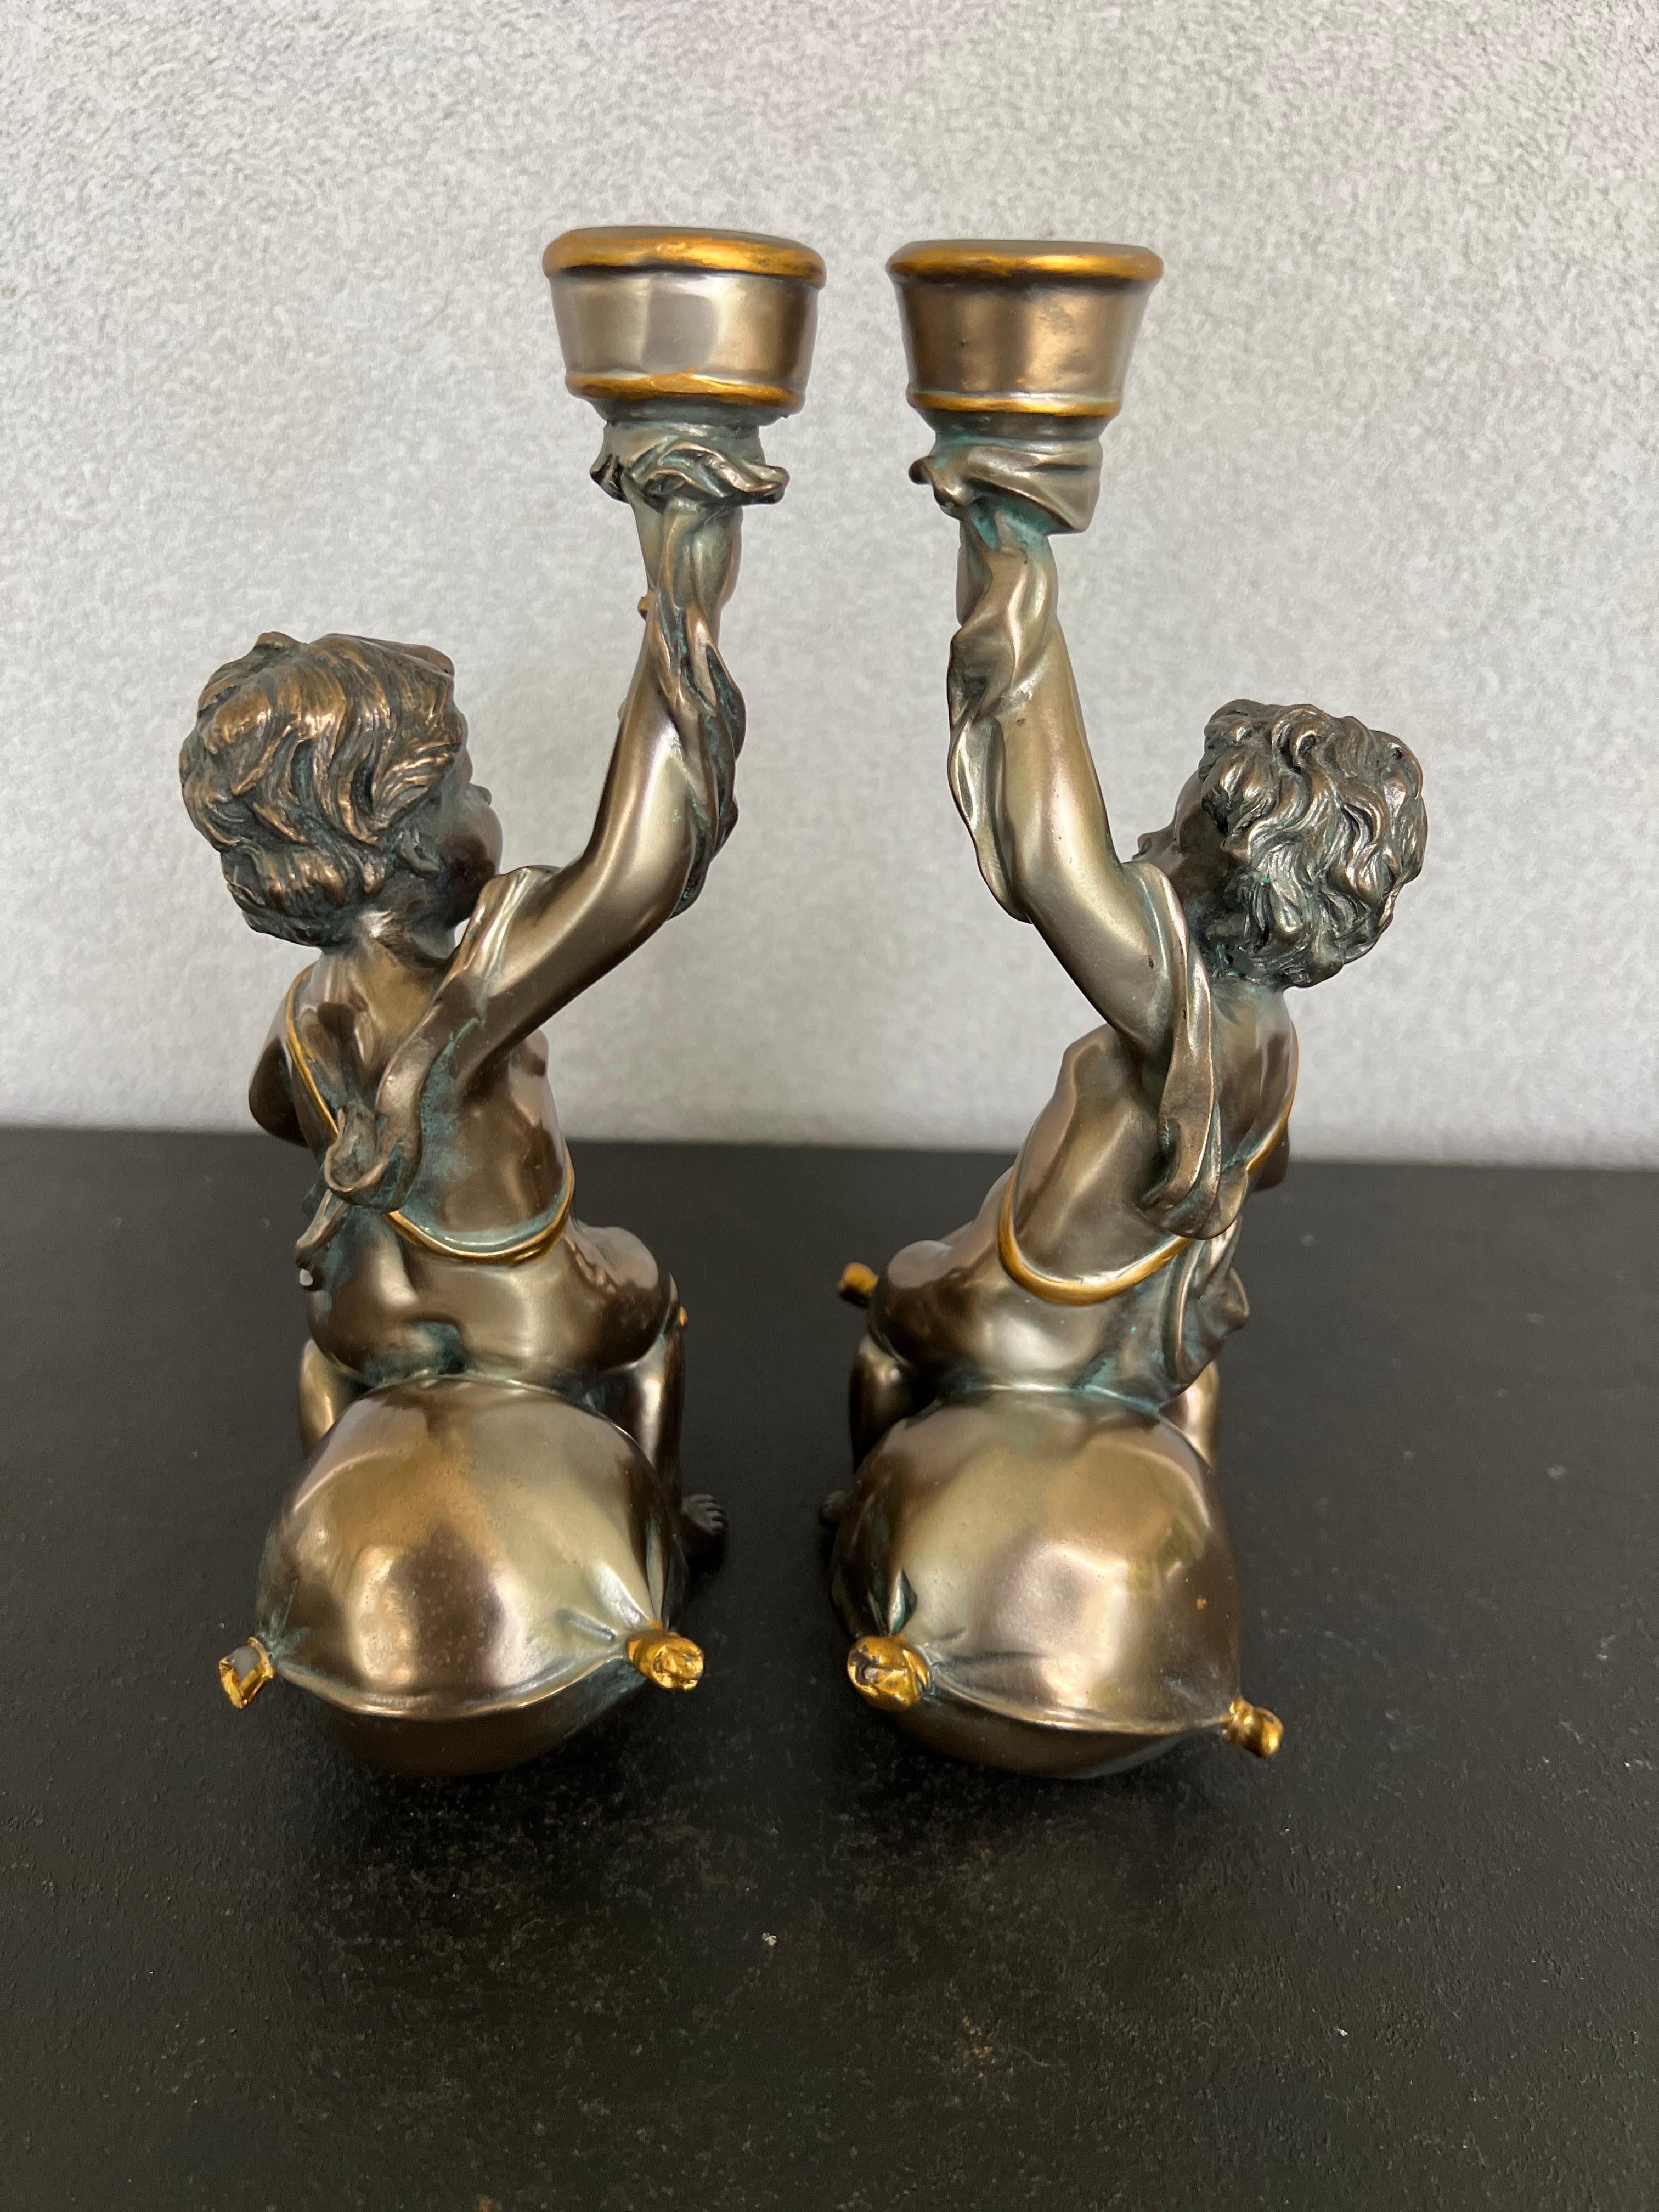 Wunderschönes Paar Bacchus-Kerzenhalter in einer antiken Bronzefarbe, ich glaube, sie sind aus Harz hergestellt. Schöne Details 
Bacchus war der römische Gott des Ackerbaus, des Weins und der Fruchtbarkeit und entspricht dem griechischen Gott